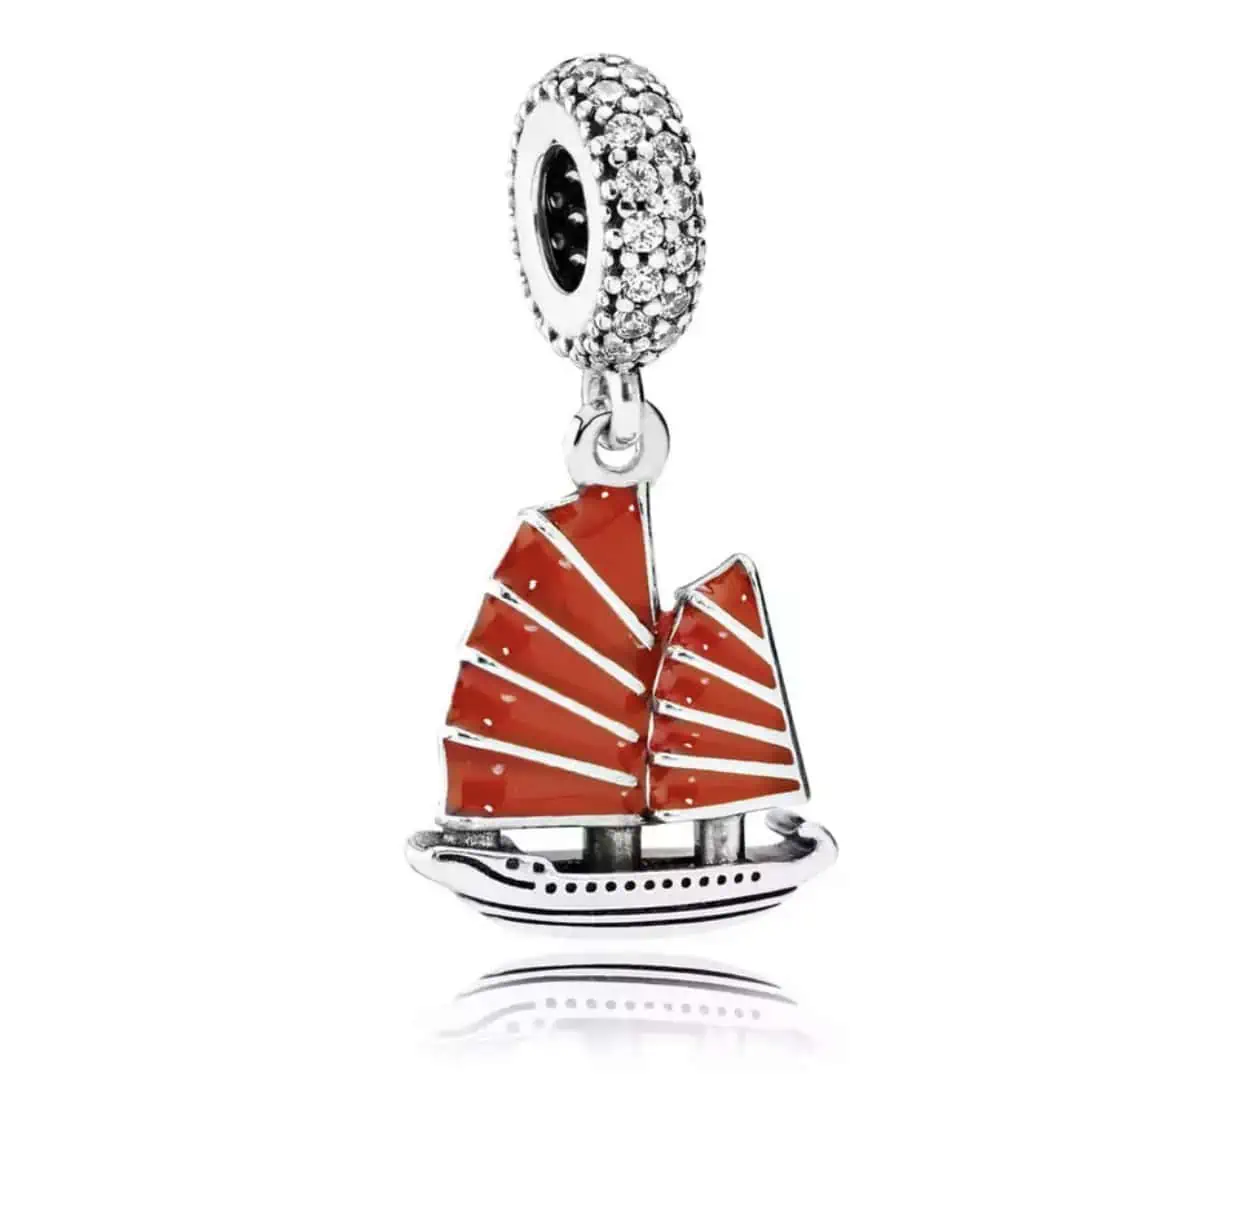 Product Afbeelding Voor en Achterzijde van onze mooi zeilboot Jonker. Deze charm bedel uit de categorie reizen is gemaakt van 925 sterling zilver en rode emaille.